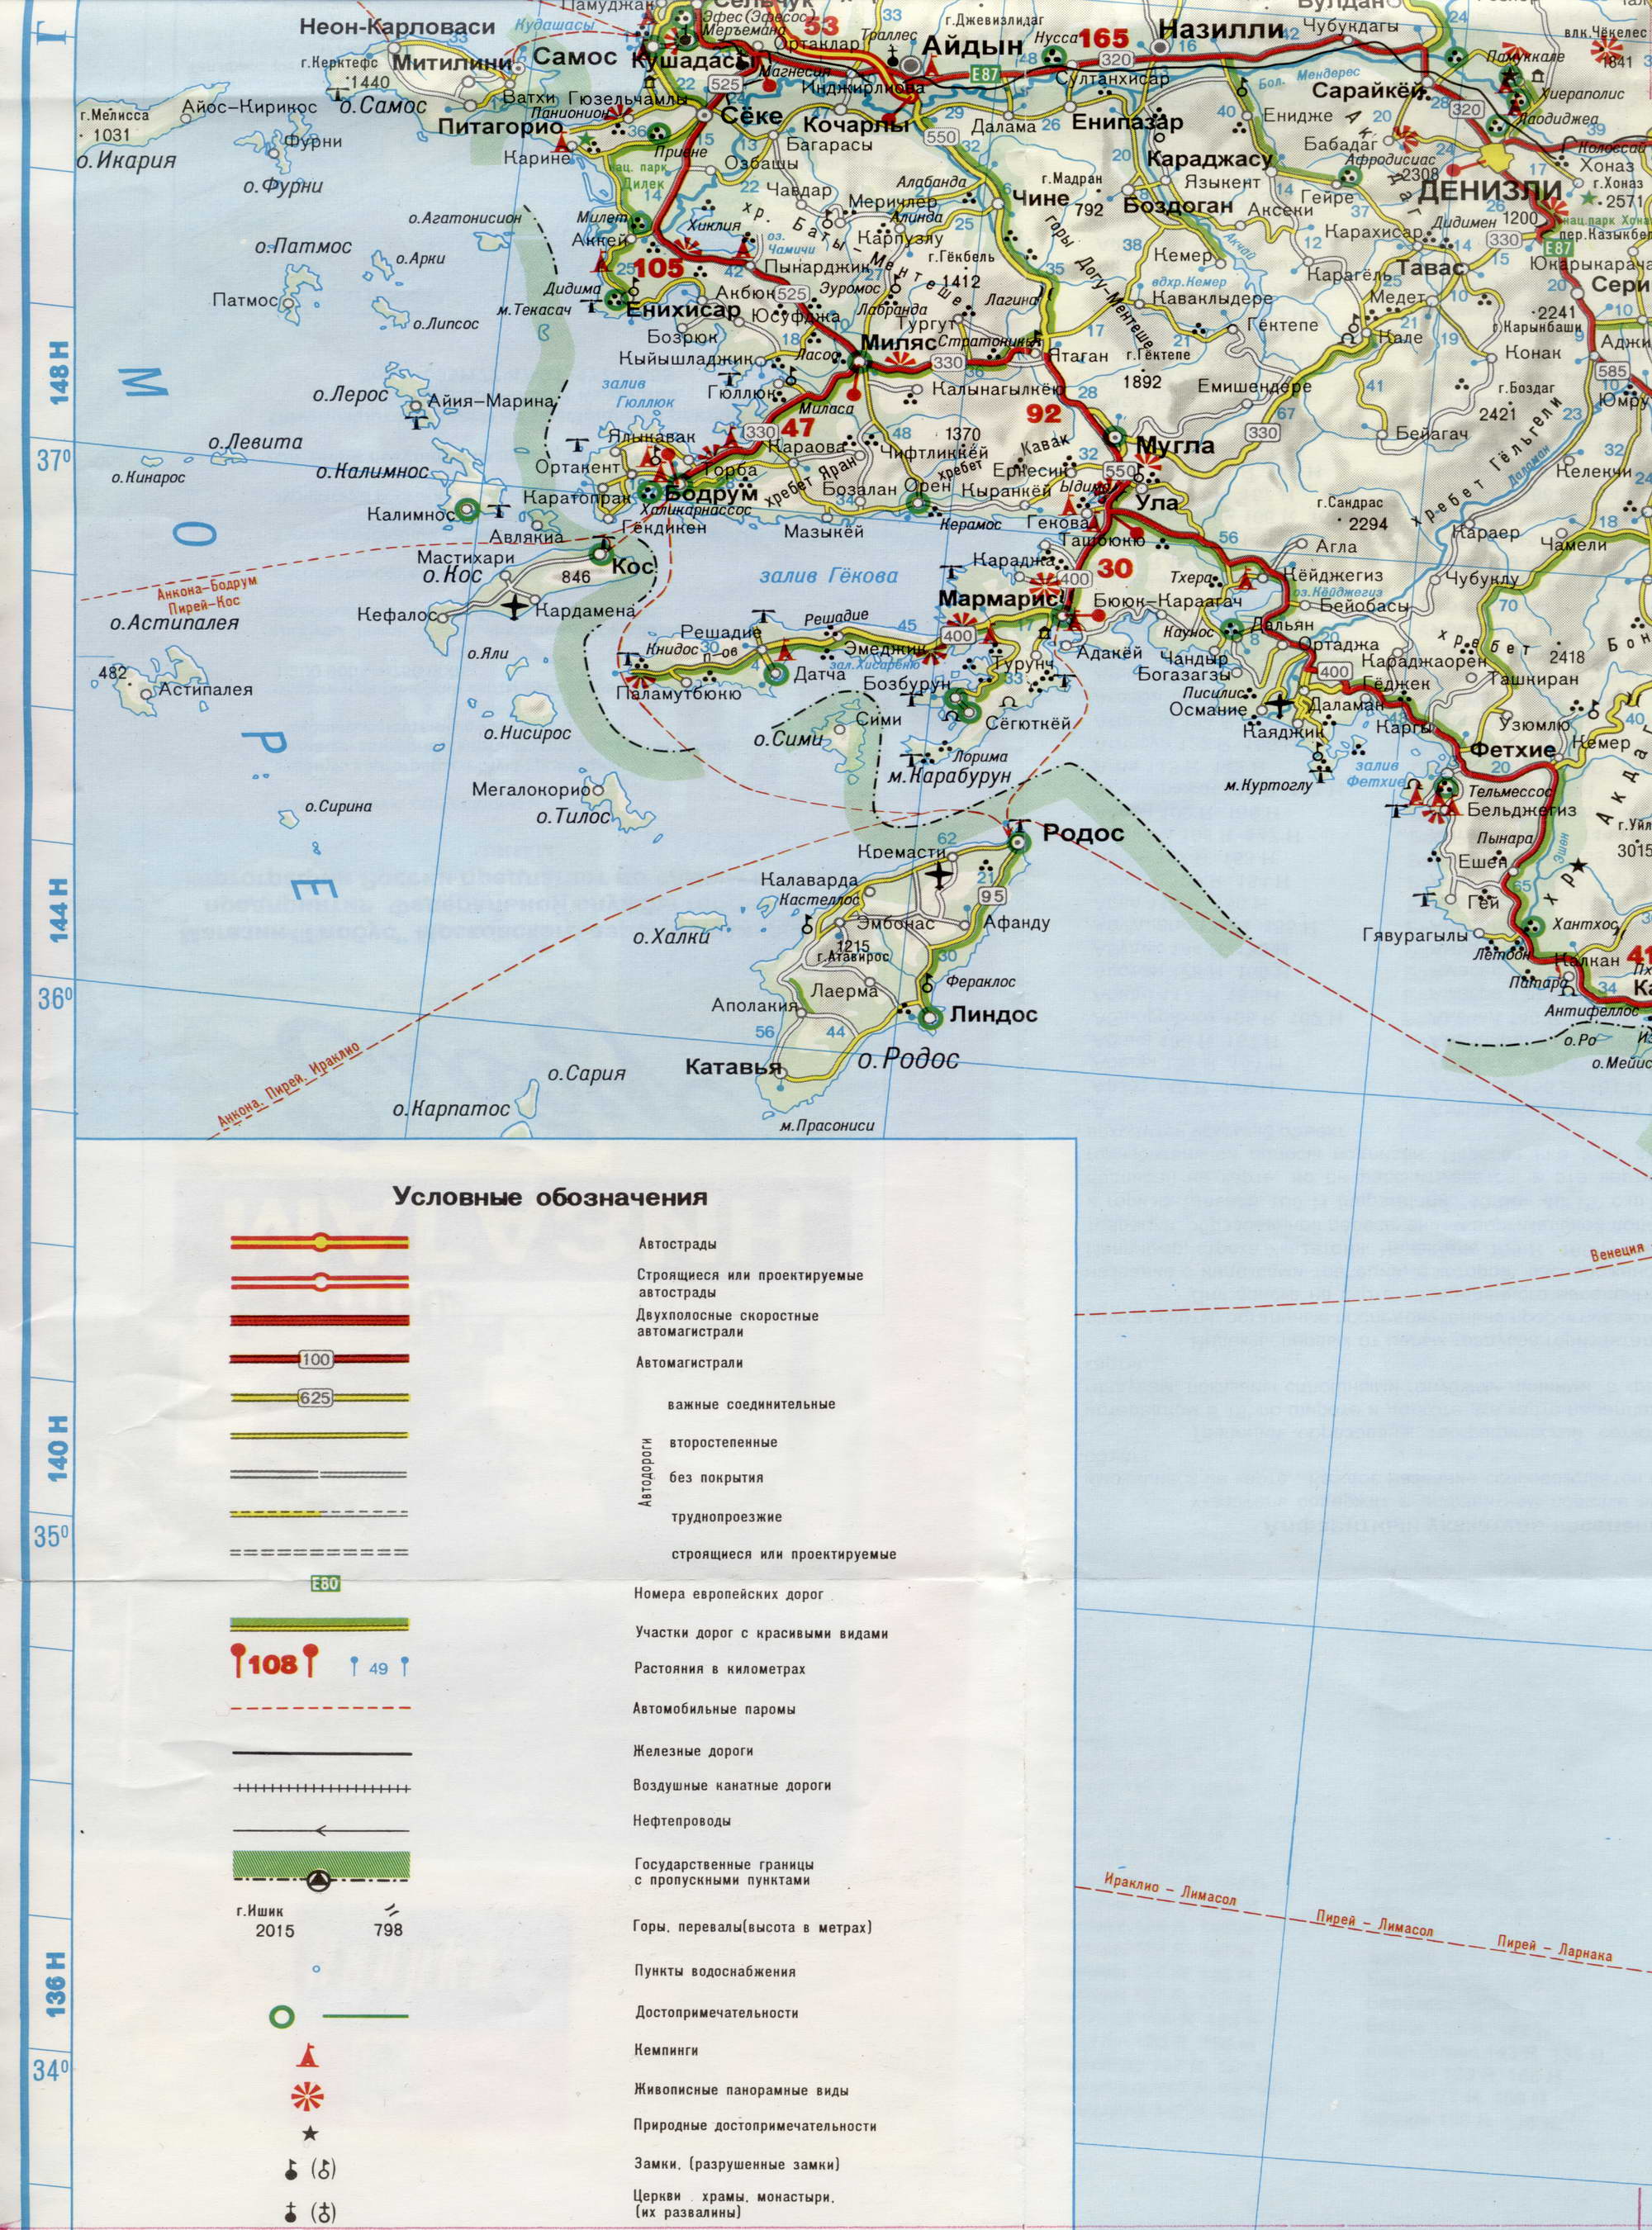 Автомобильная карта Турции на русском языке. Большая подробная карта Турции на русском языке. Автомобильная карта Турции, A1 - 